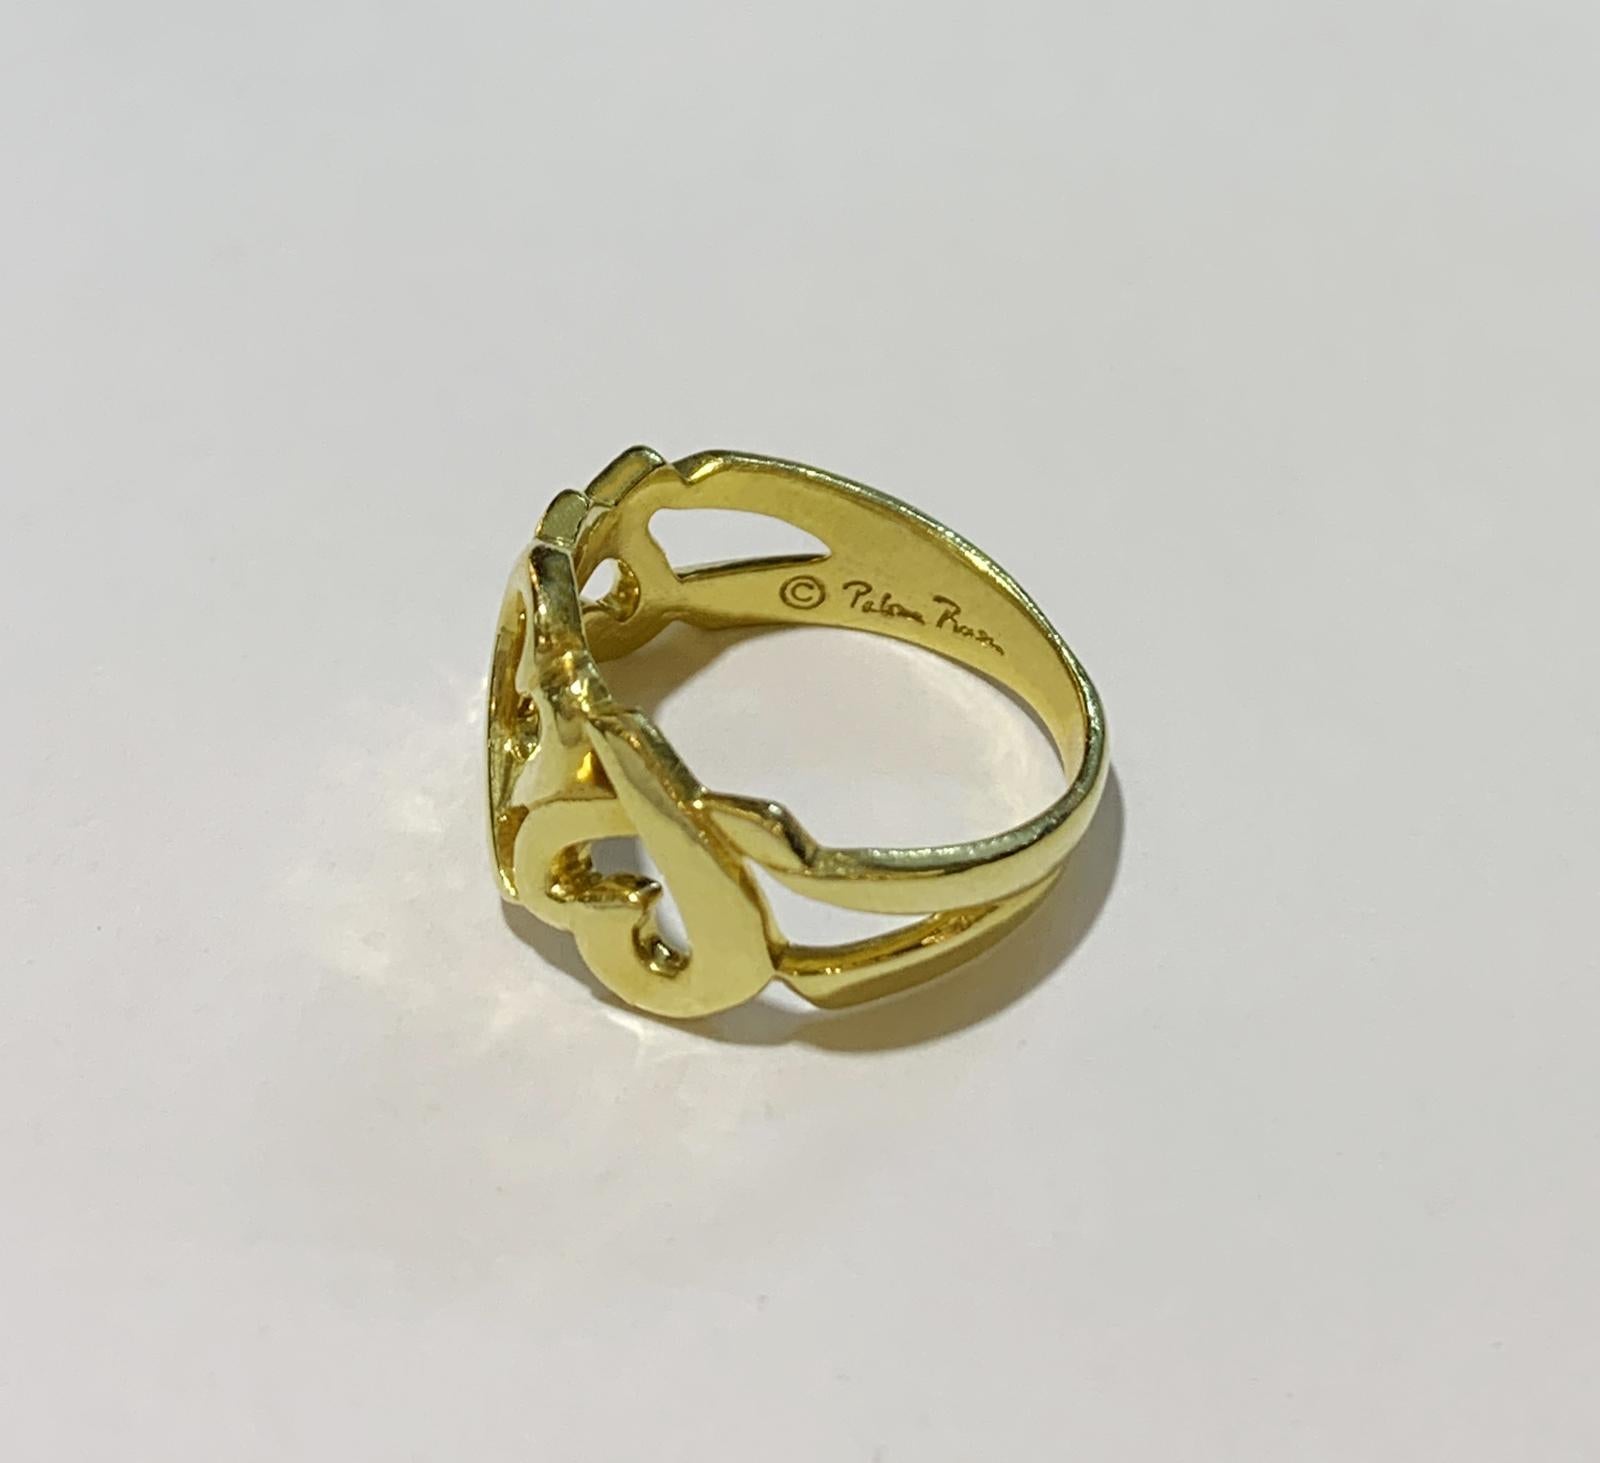 TIFFANY & CO. PALOMA PICASSO 18KT LIEBEVOLLER HERZ RING.

-Guter Zustand
-18k Gelbgold
-Ringgröße: 4
-Gewicht: 3,7 g

*Wird mit Tiffany-Etui geliefert.